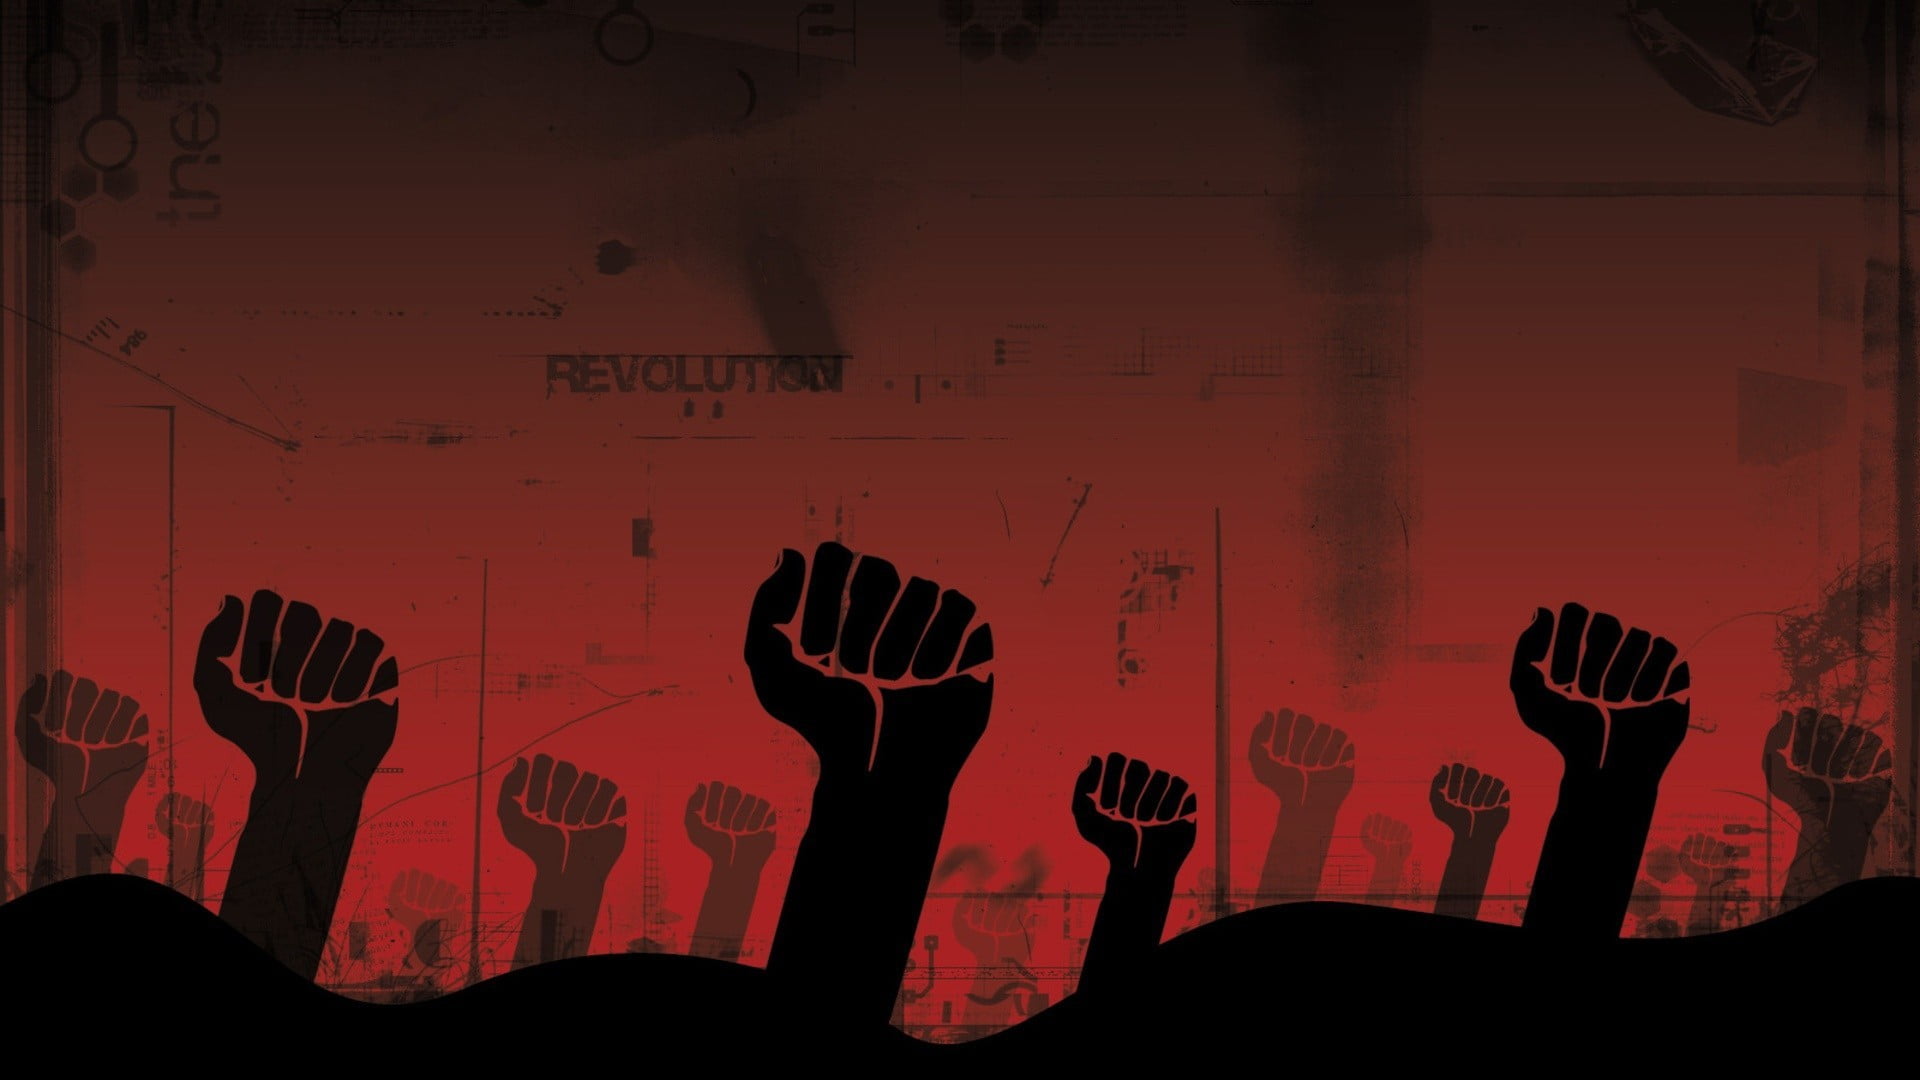 Revolution poster, red, fists, revolution 